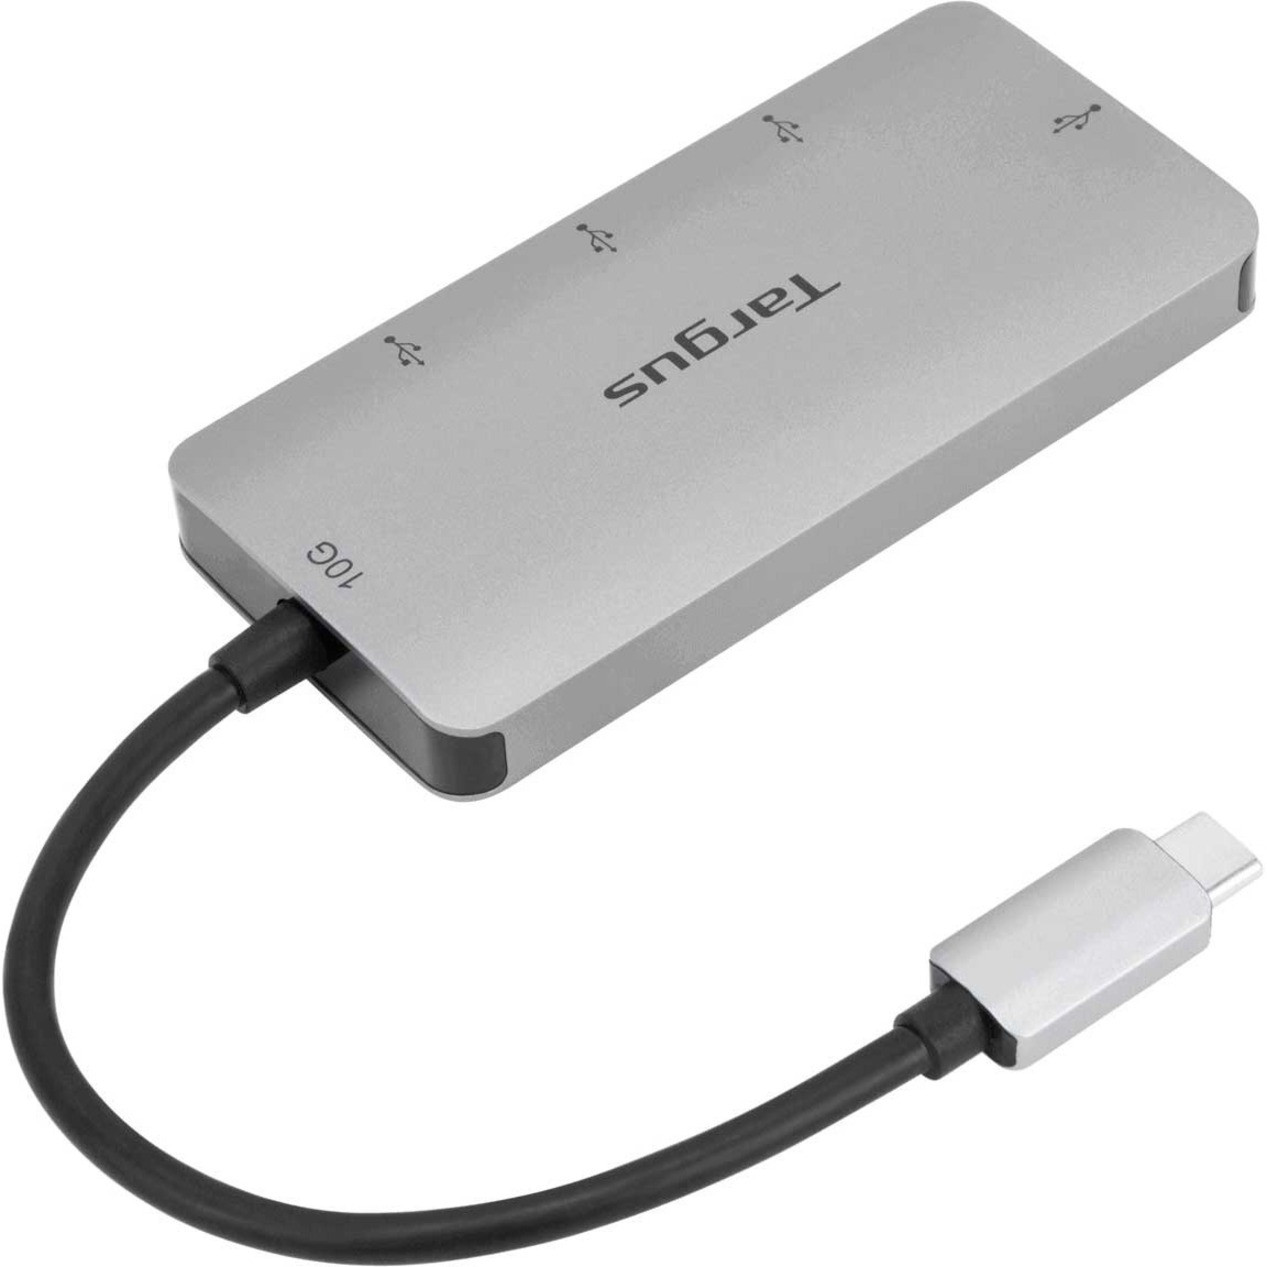 Targus USB-C Multi-Port Hub with 4x USB-A Ports, 10GUSB Type CExternal4 USB Port0 Network (RJ-45) Port4 USB 3.1 Port -… ACH227USZ